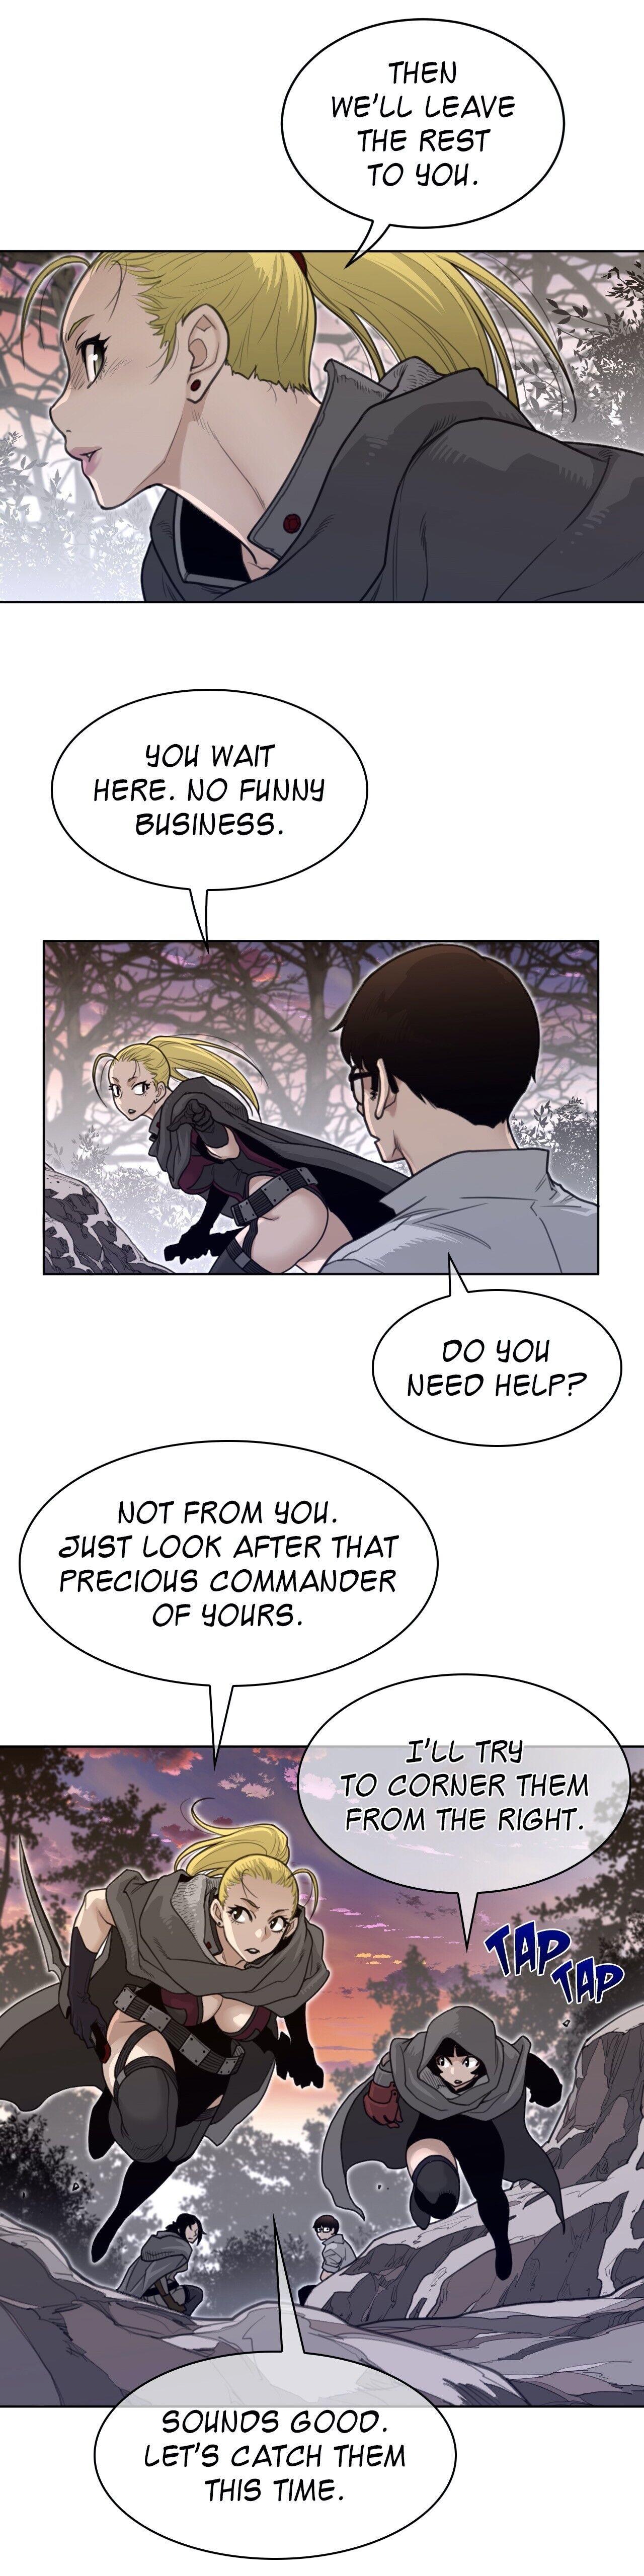 Perfect Half Chapter 135 : Another Reunion (Season 2 Finale) page 12 - Mangakakalot